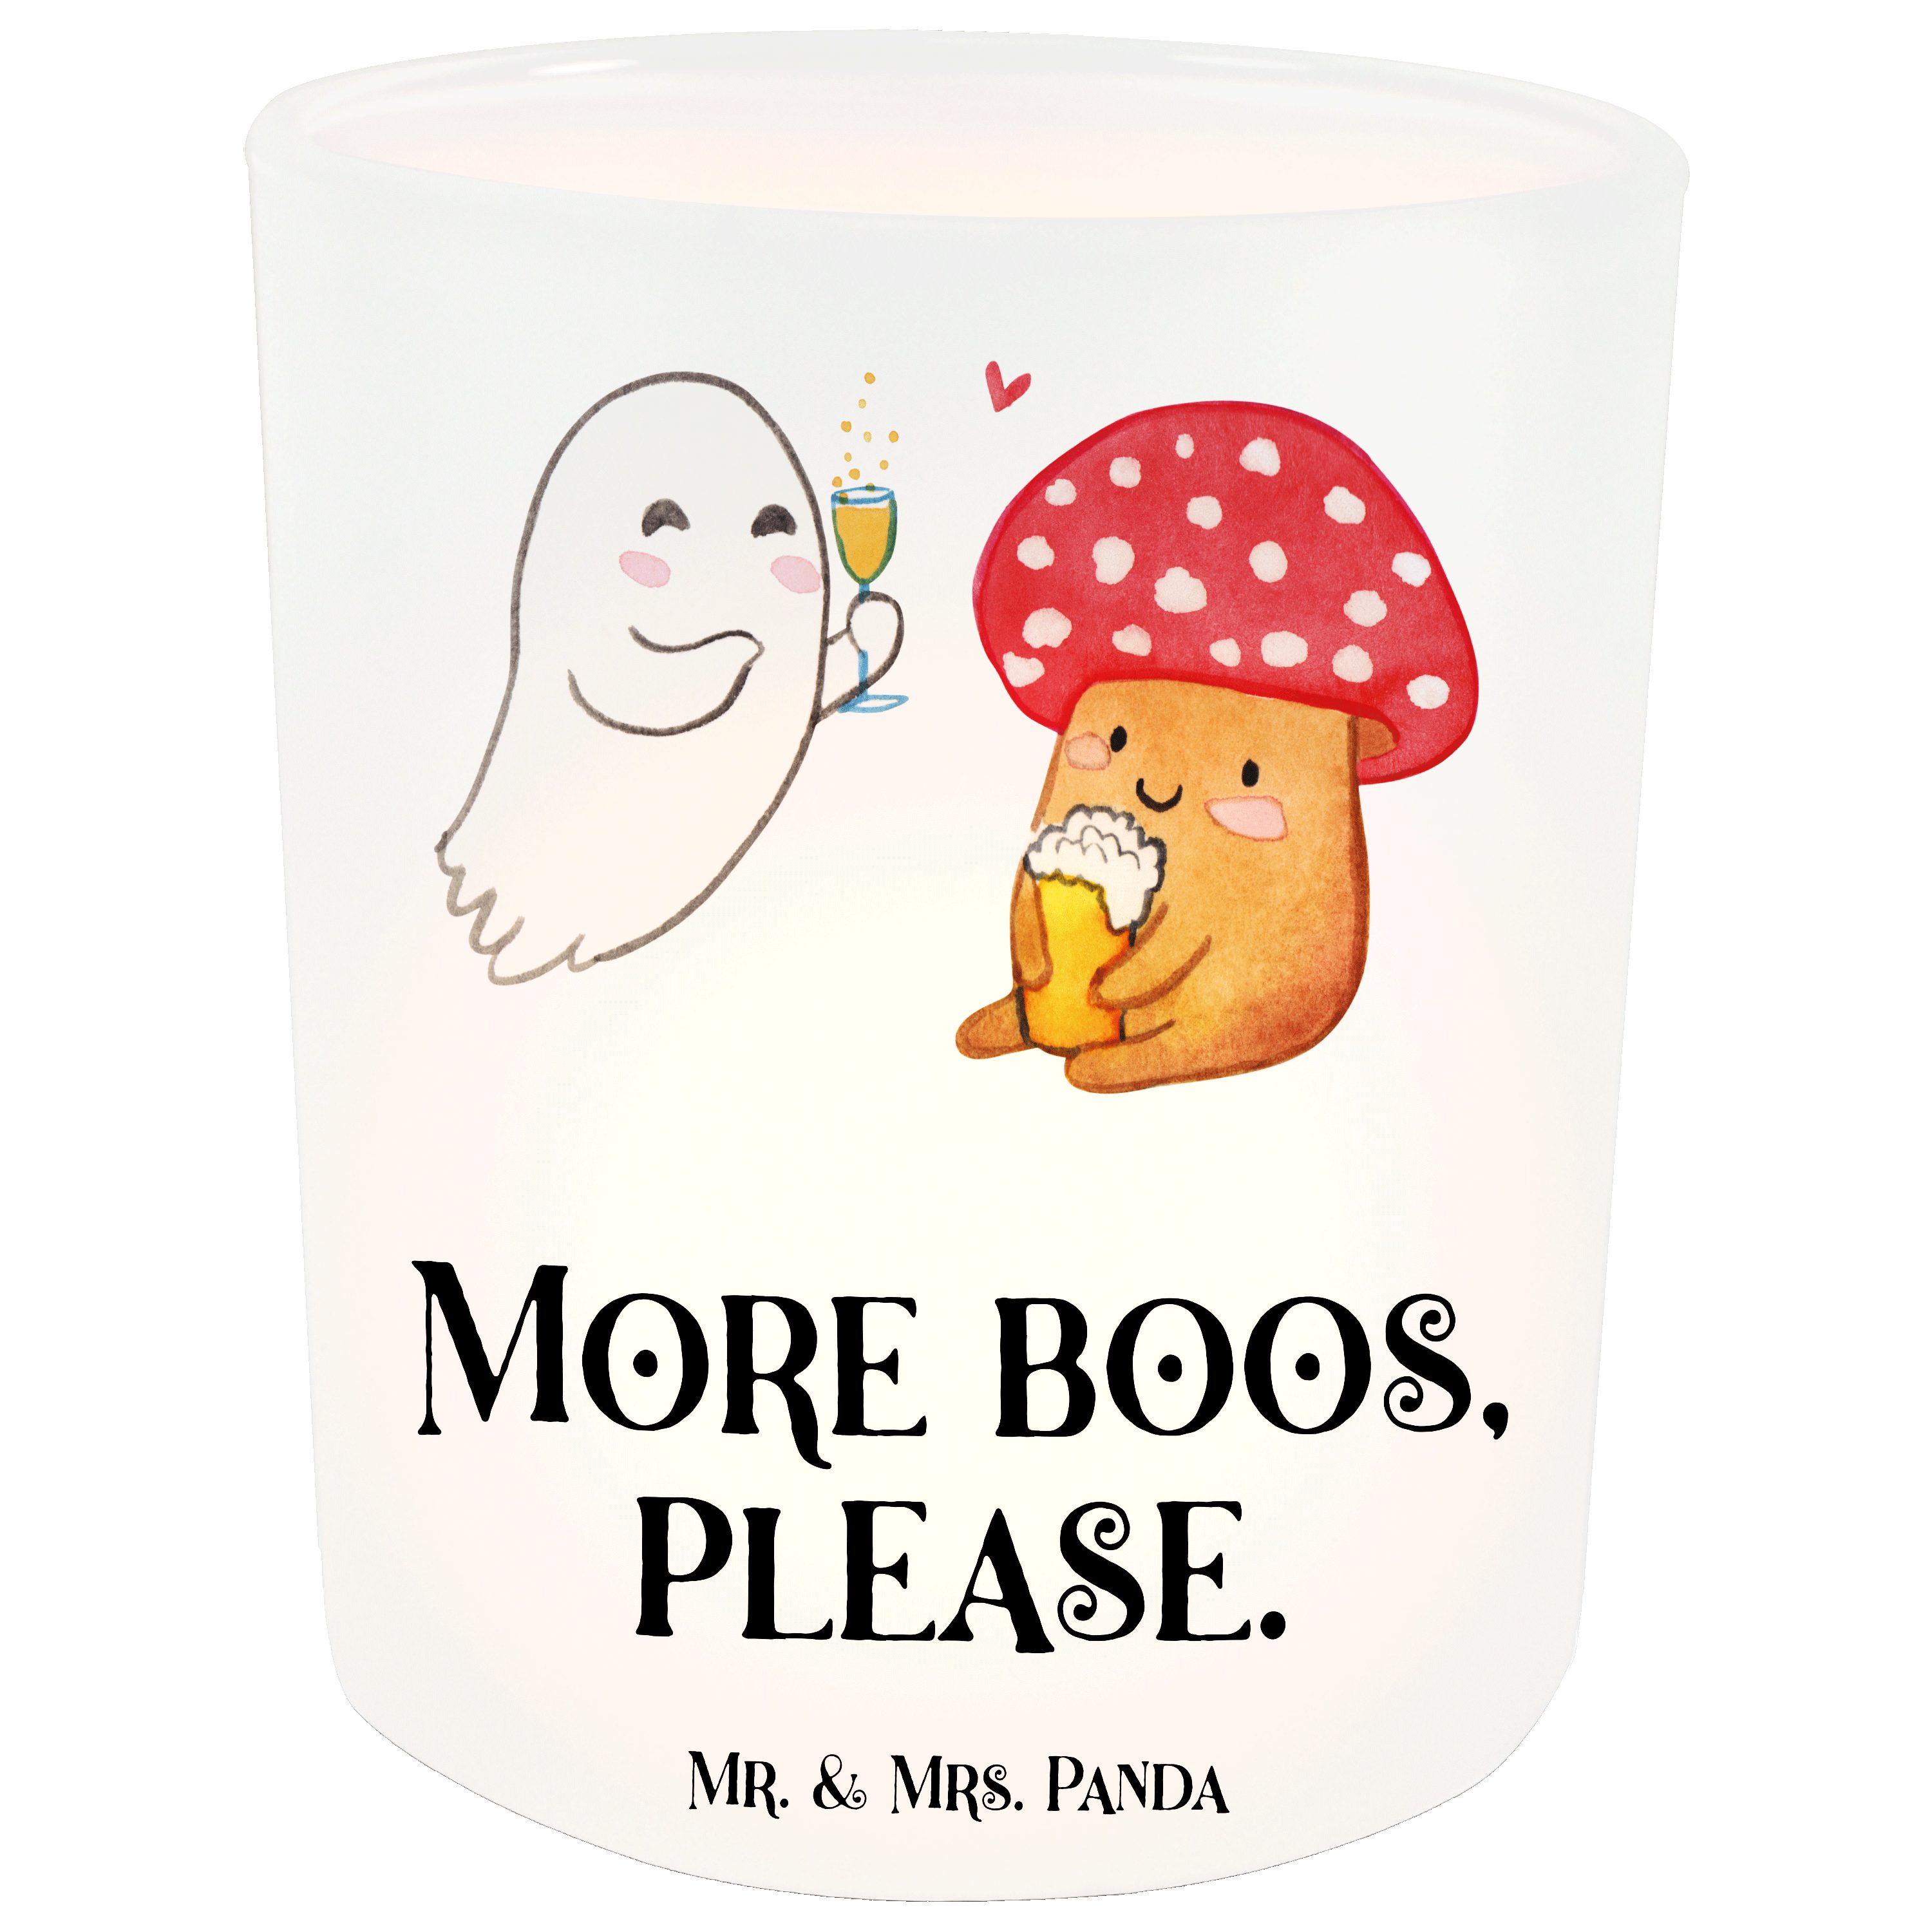 Mr. & Mrs. Panda Windlicht Gespenst Prost - Transparent - Geschenk, Teelichter, Windlicht Glas (1 St)